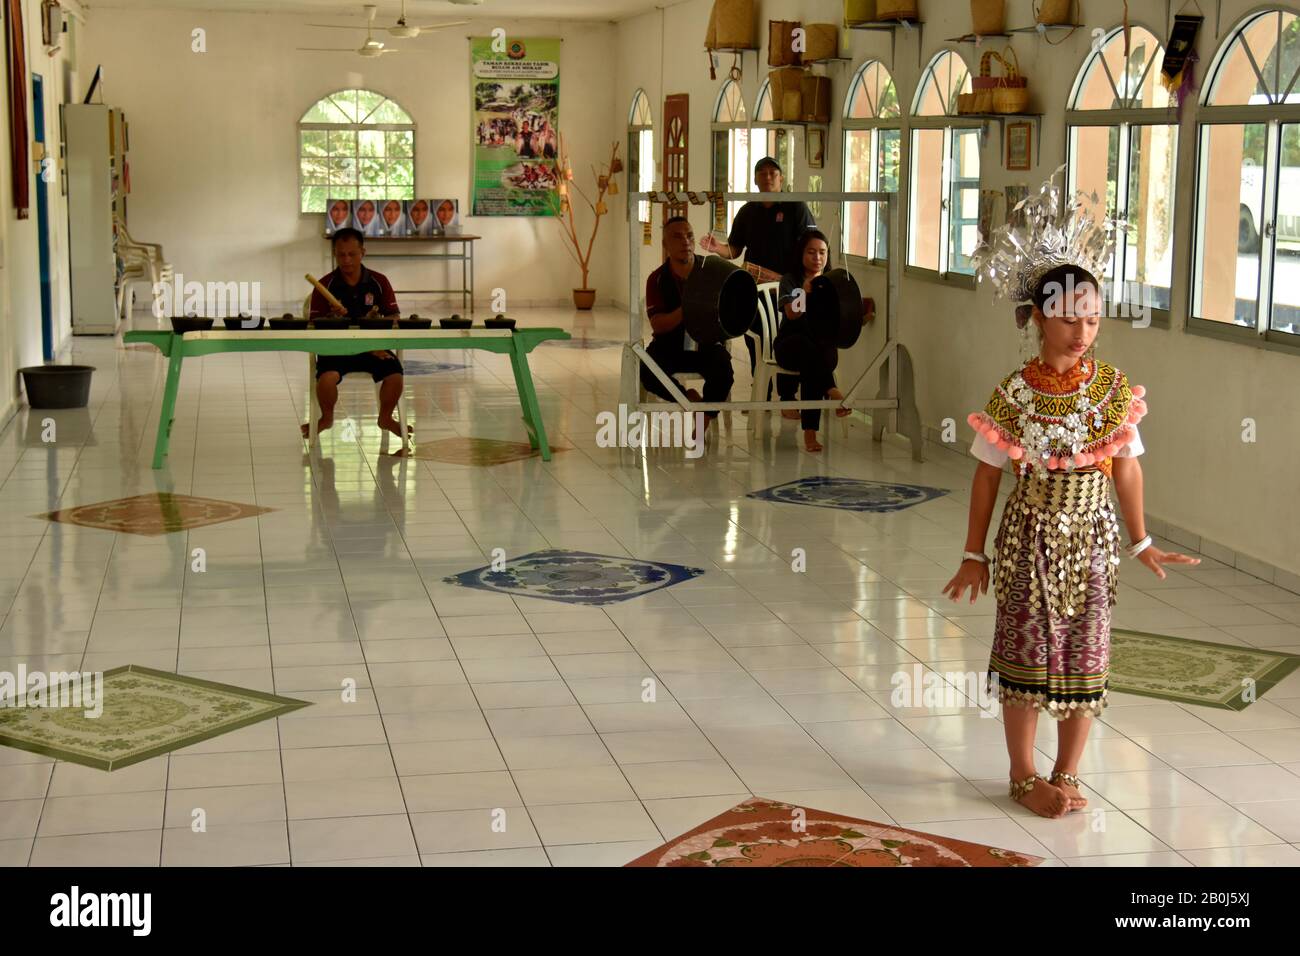 Mädchen präsentiert einen traditionellen Iban-Tanz, der für die indigene Bevölkerung der Gegend von Ulu Temburong, Brunei, typisch ist Stockfoto